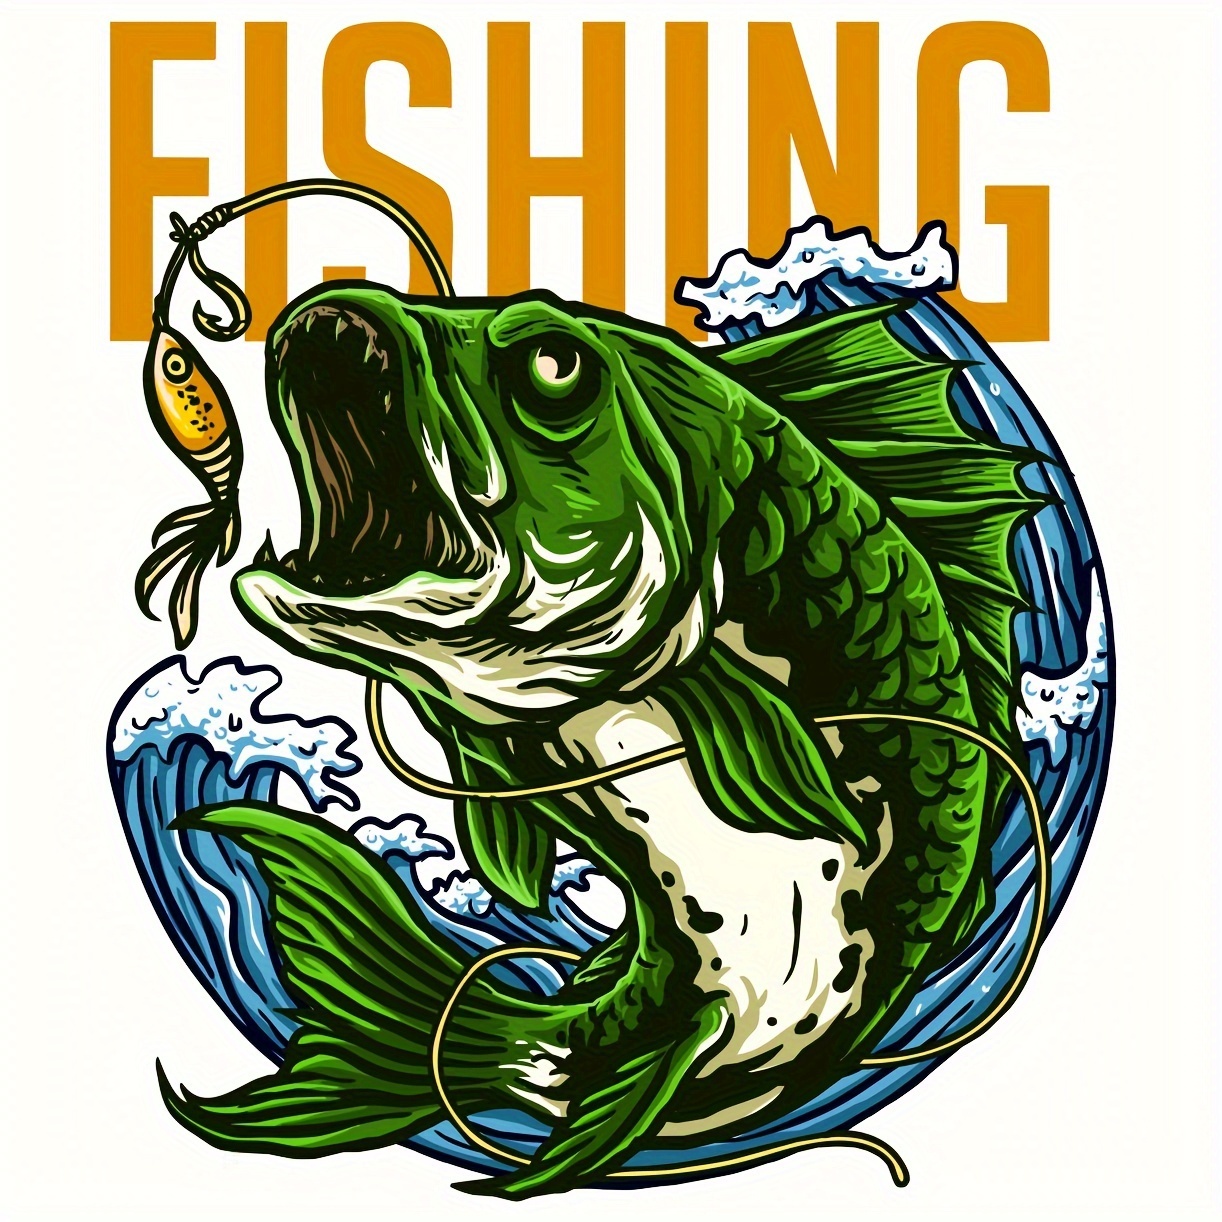  Kiss My Bass Embroidered Patch Largemouth Bass Fishing Iron-On  Novelty Joke Gift